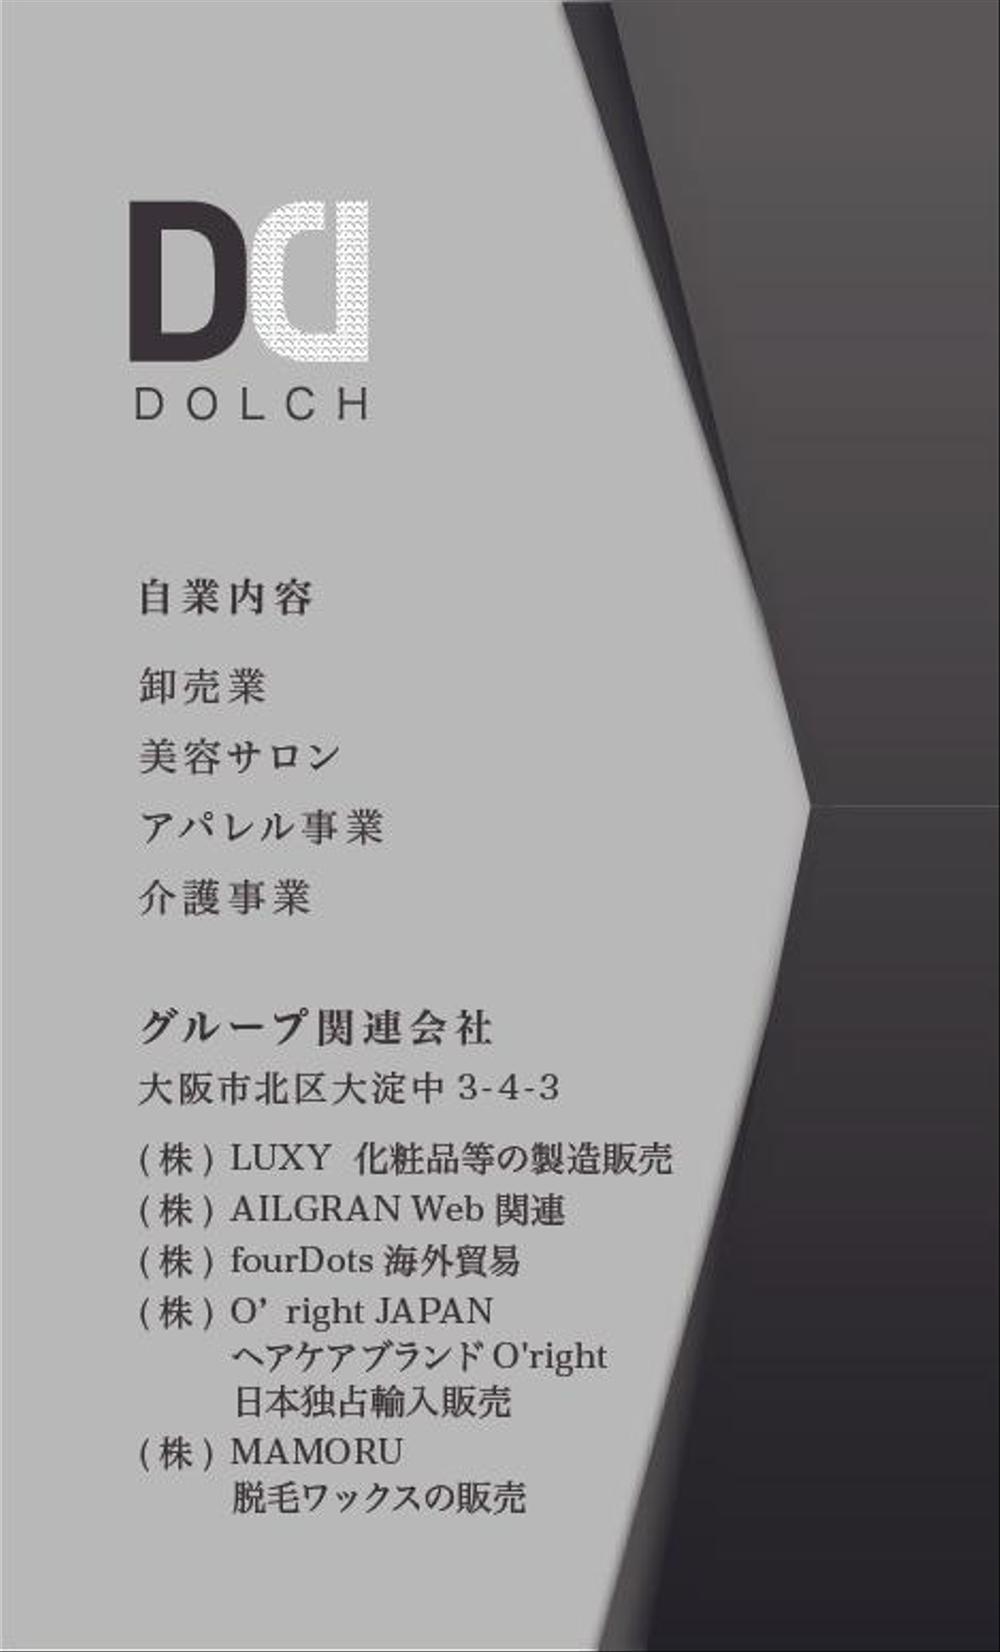 株式会社DOLCI（ドルチ）の名刺デザイン